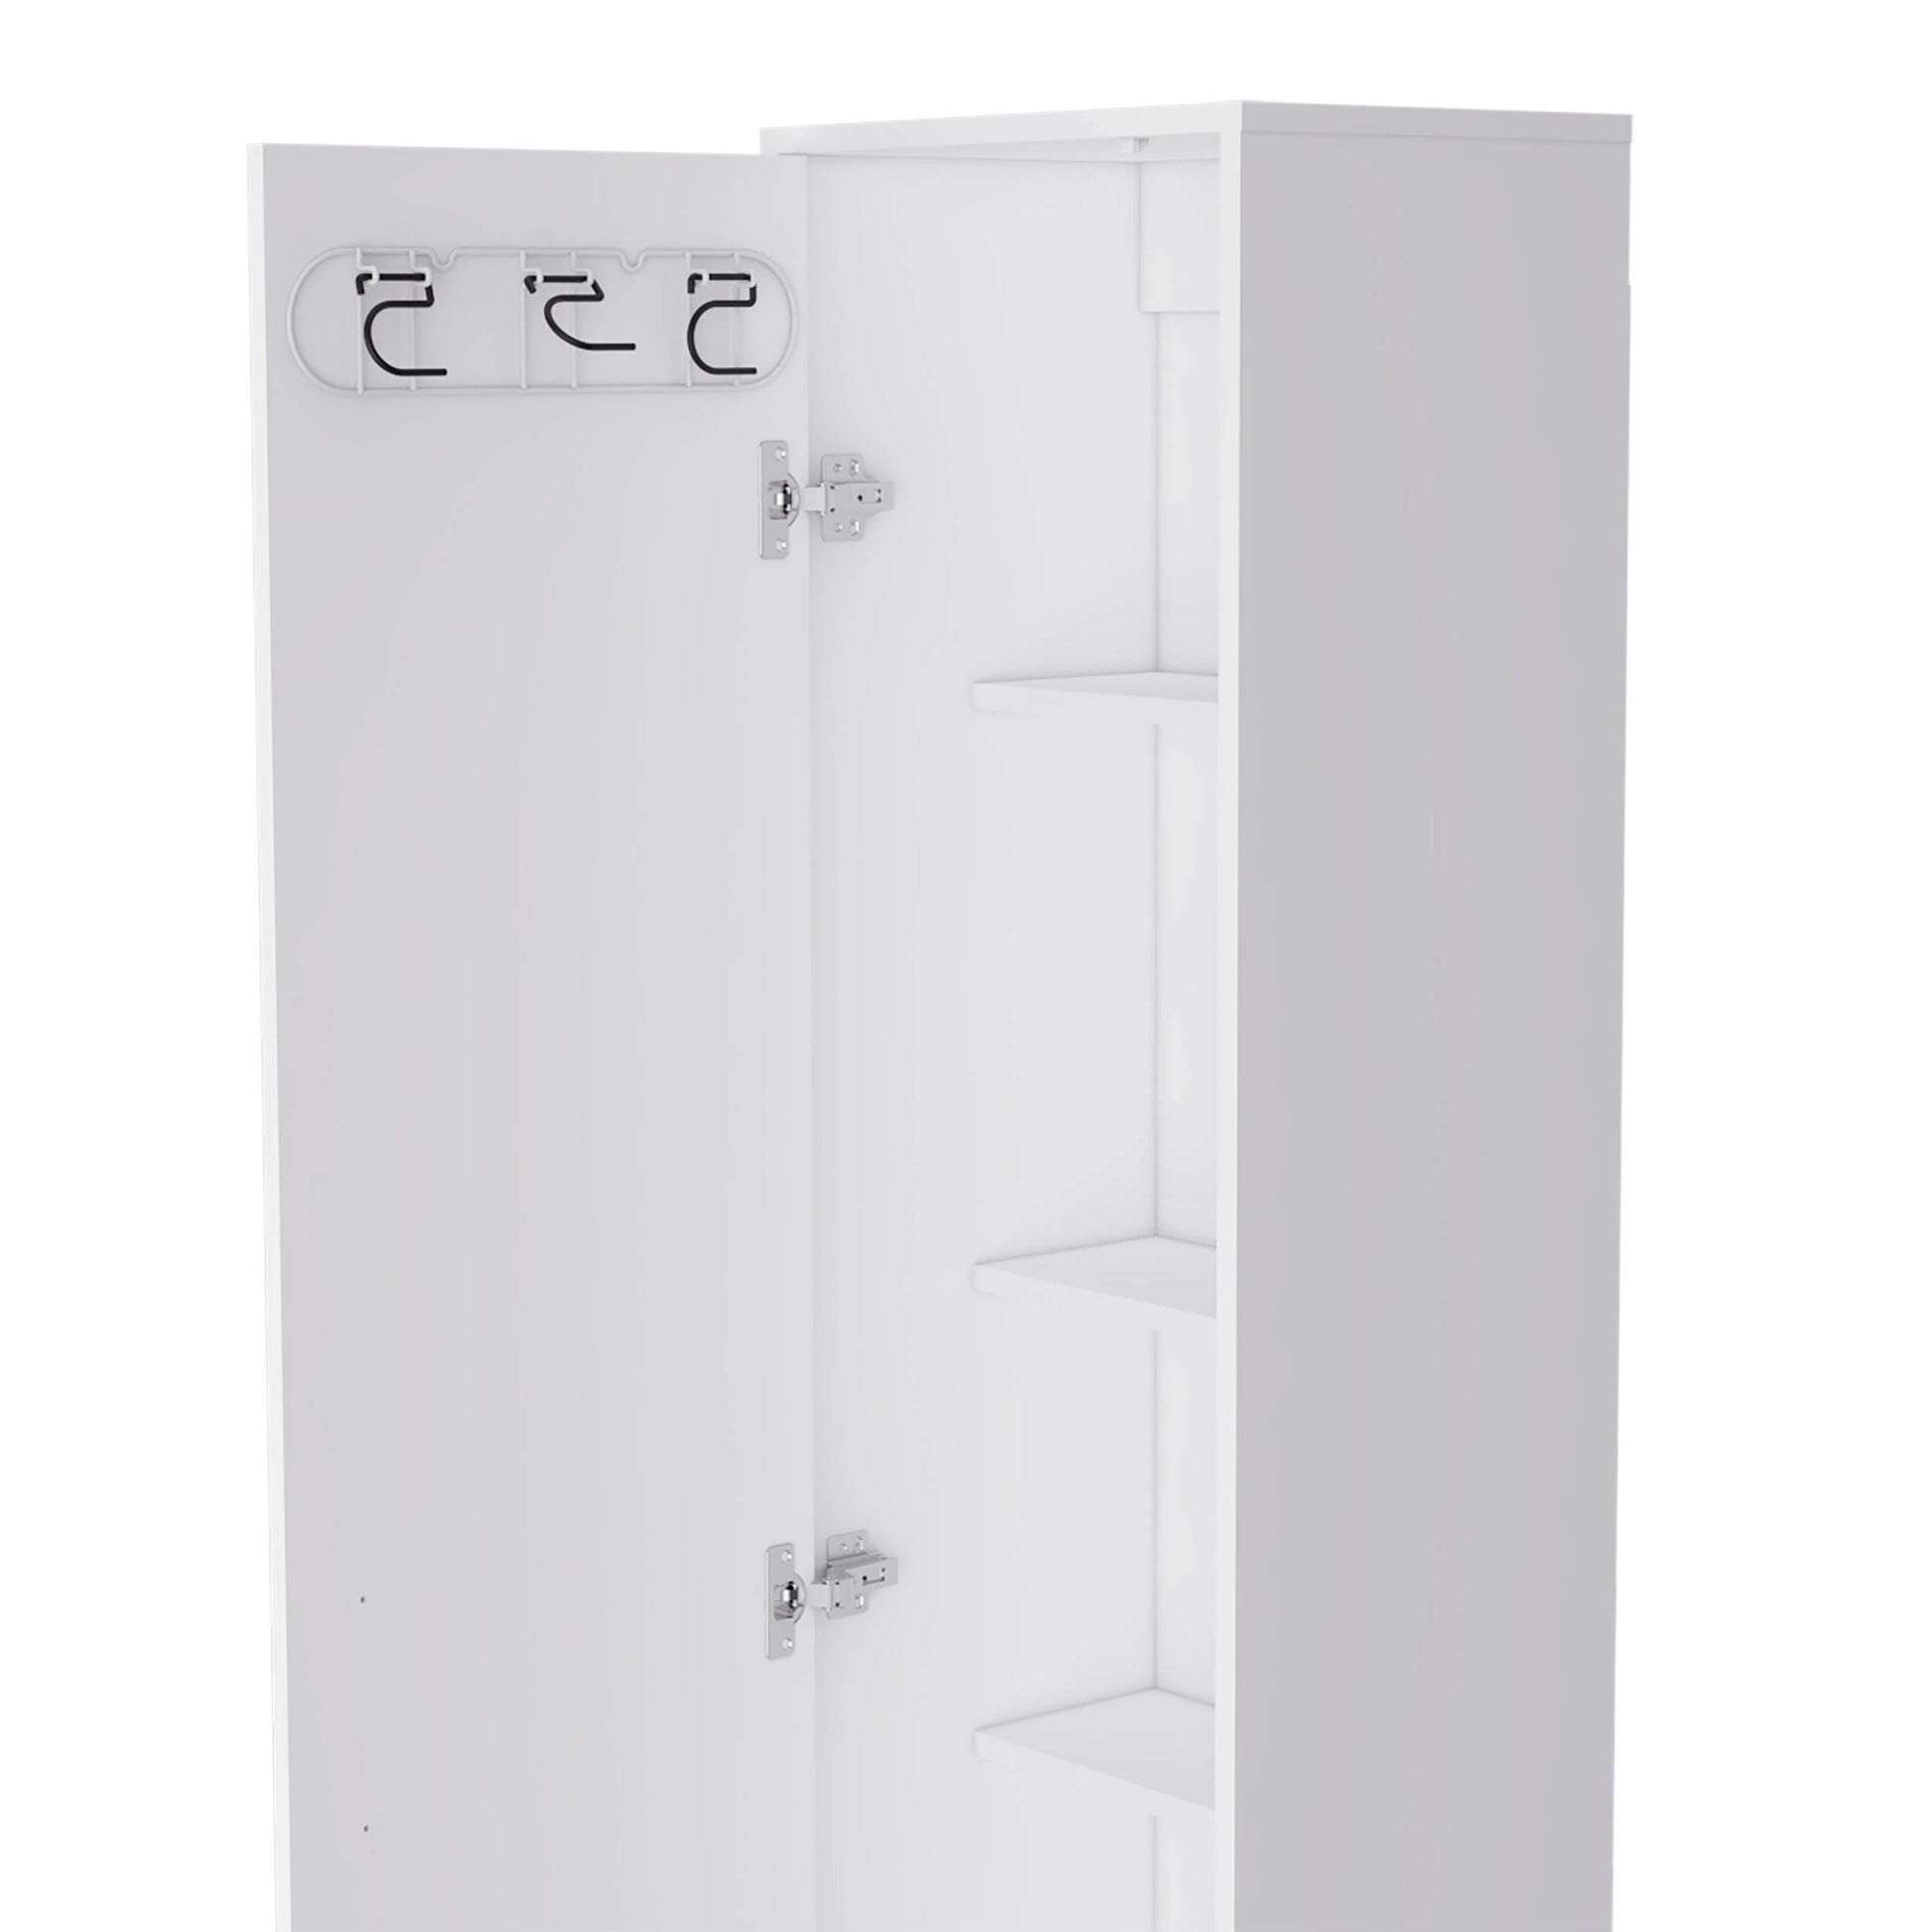 Lawen Tall Storage Cabinet, Single Door, 3 Broom